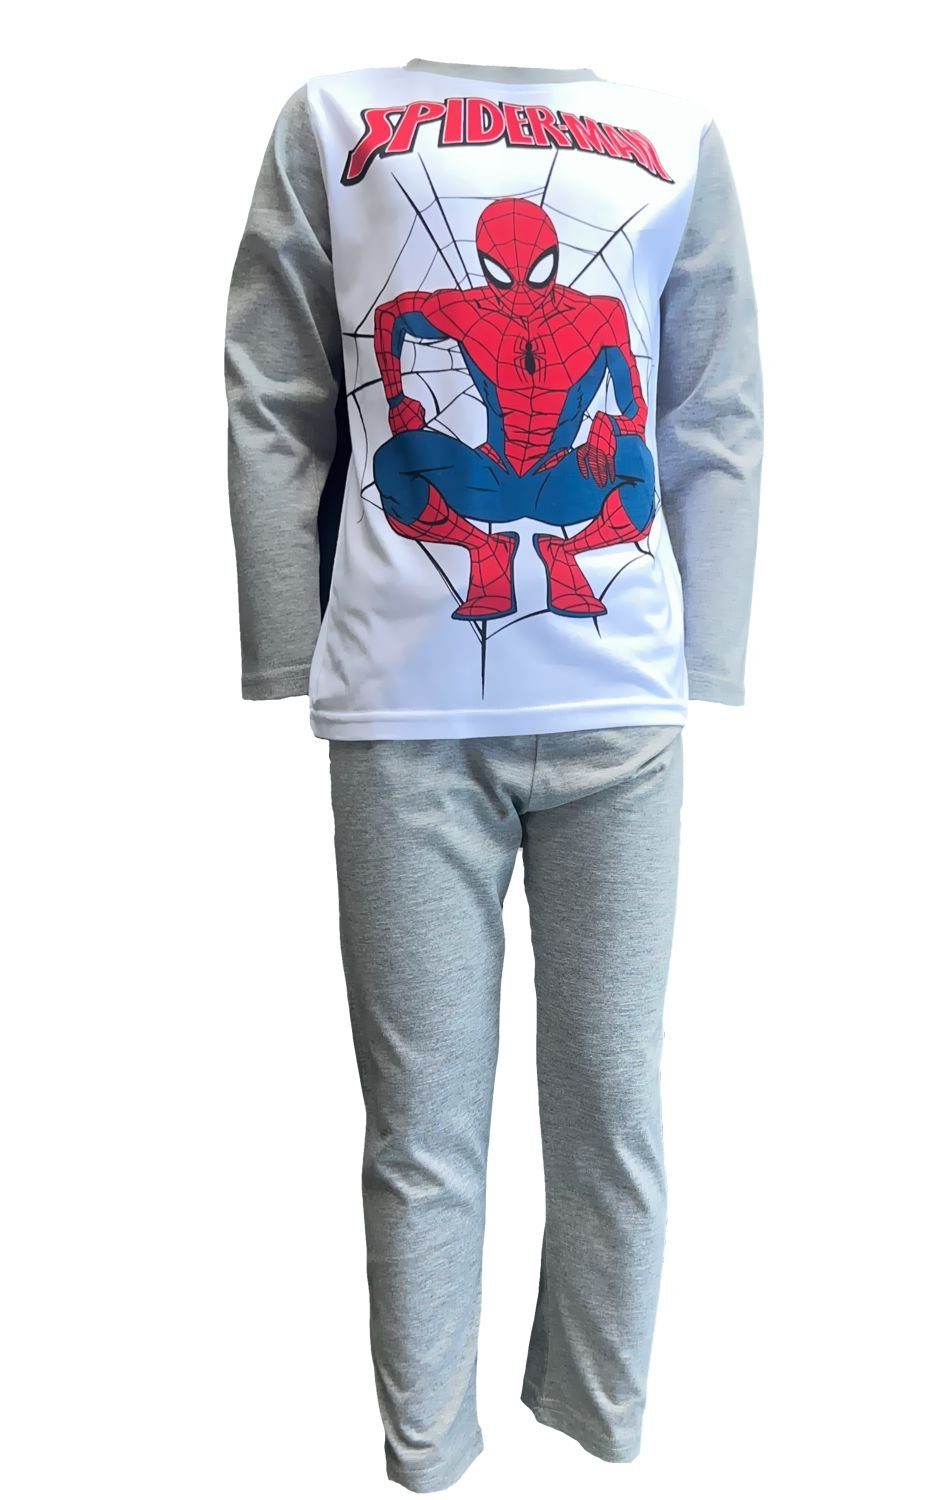 Spiderman Pyjama Spider-Man Jungen Schlafanzug Pyjama Gr.98 104 110 116 128